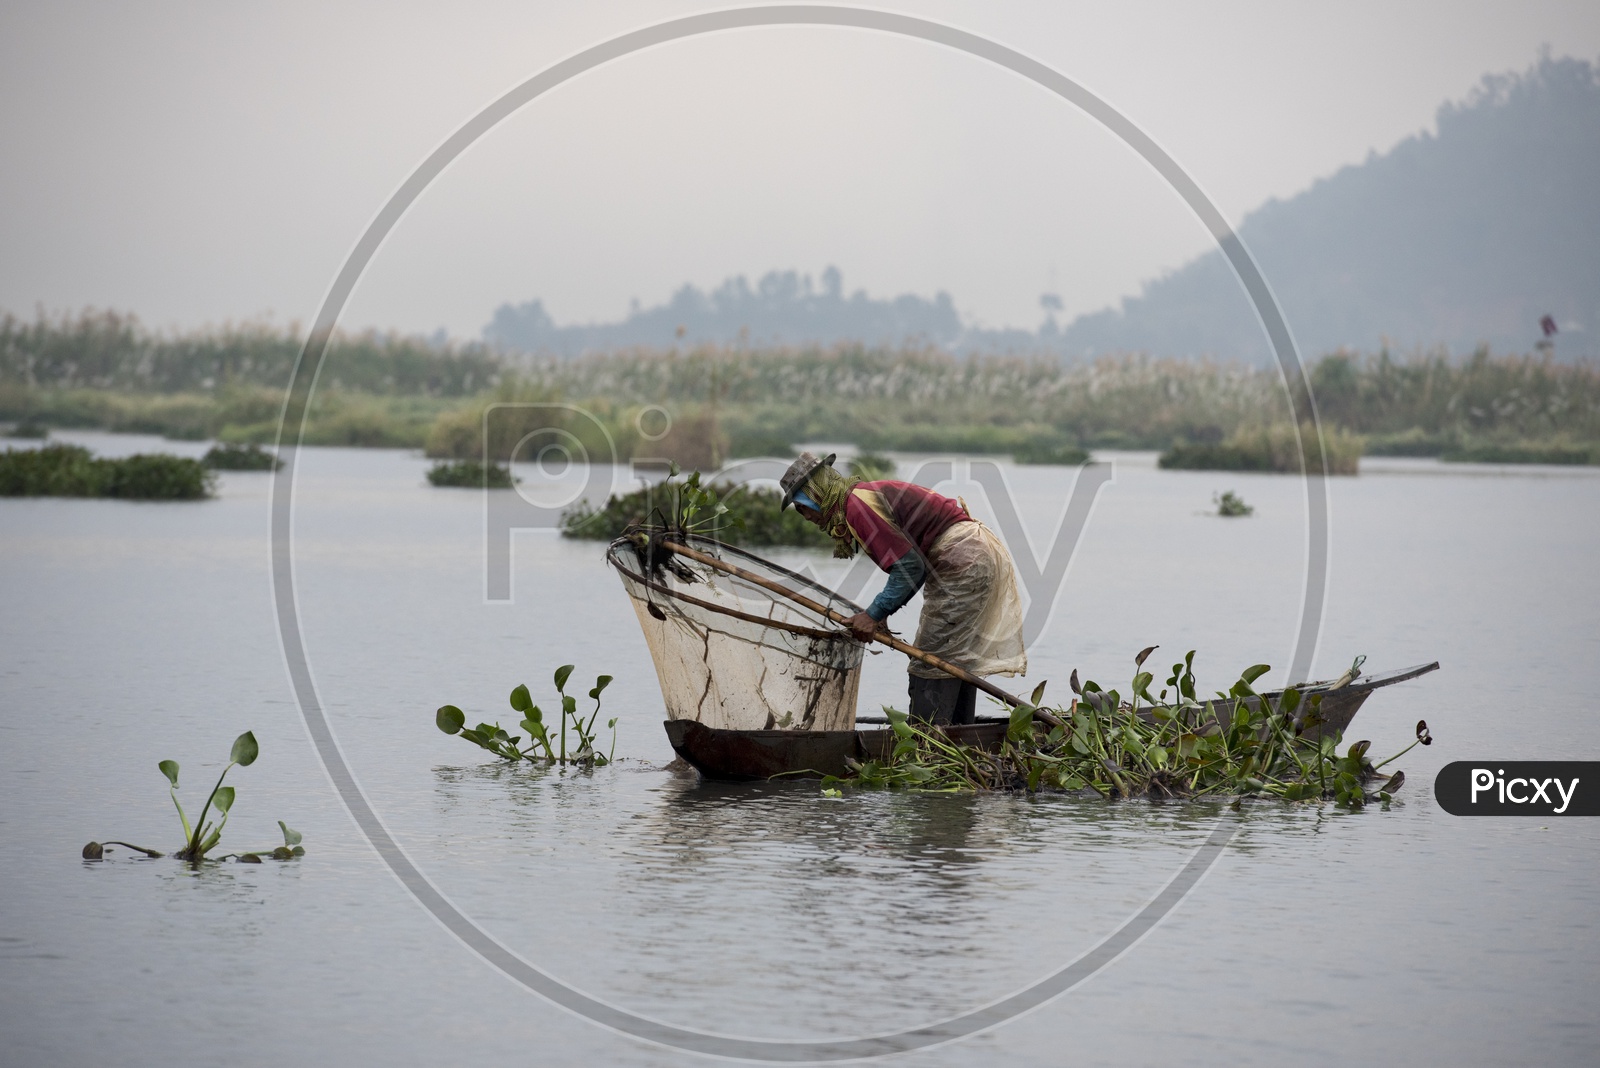 Fisherman in Loktak Lake, Manipur